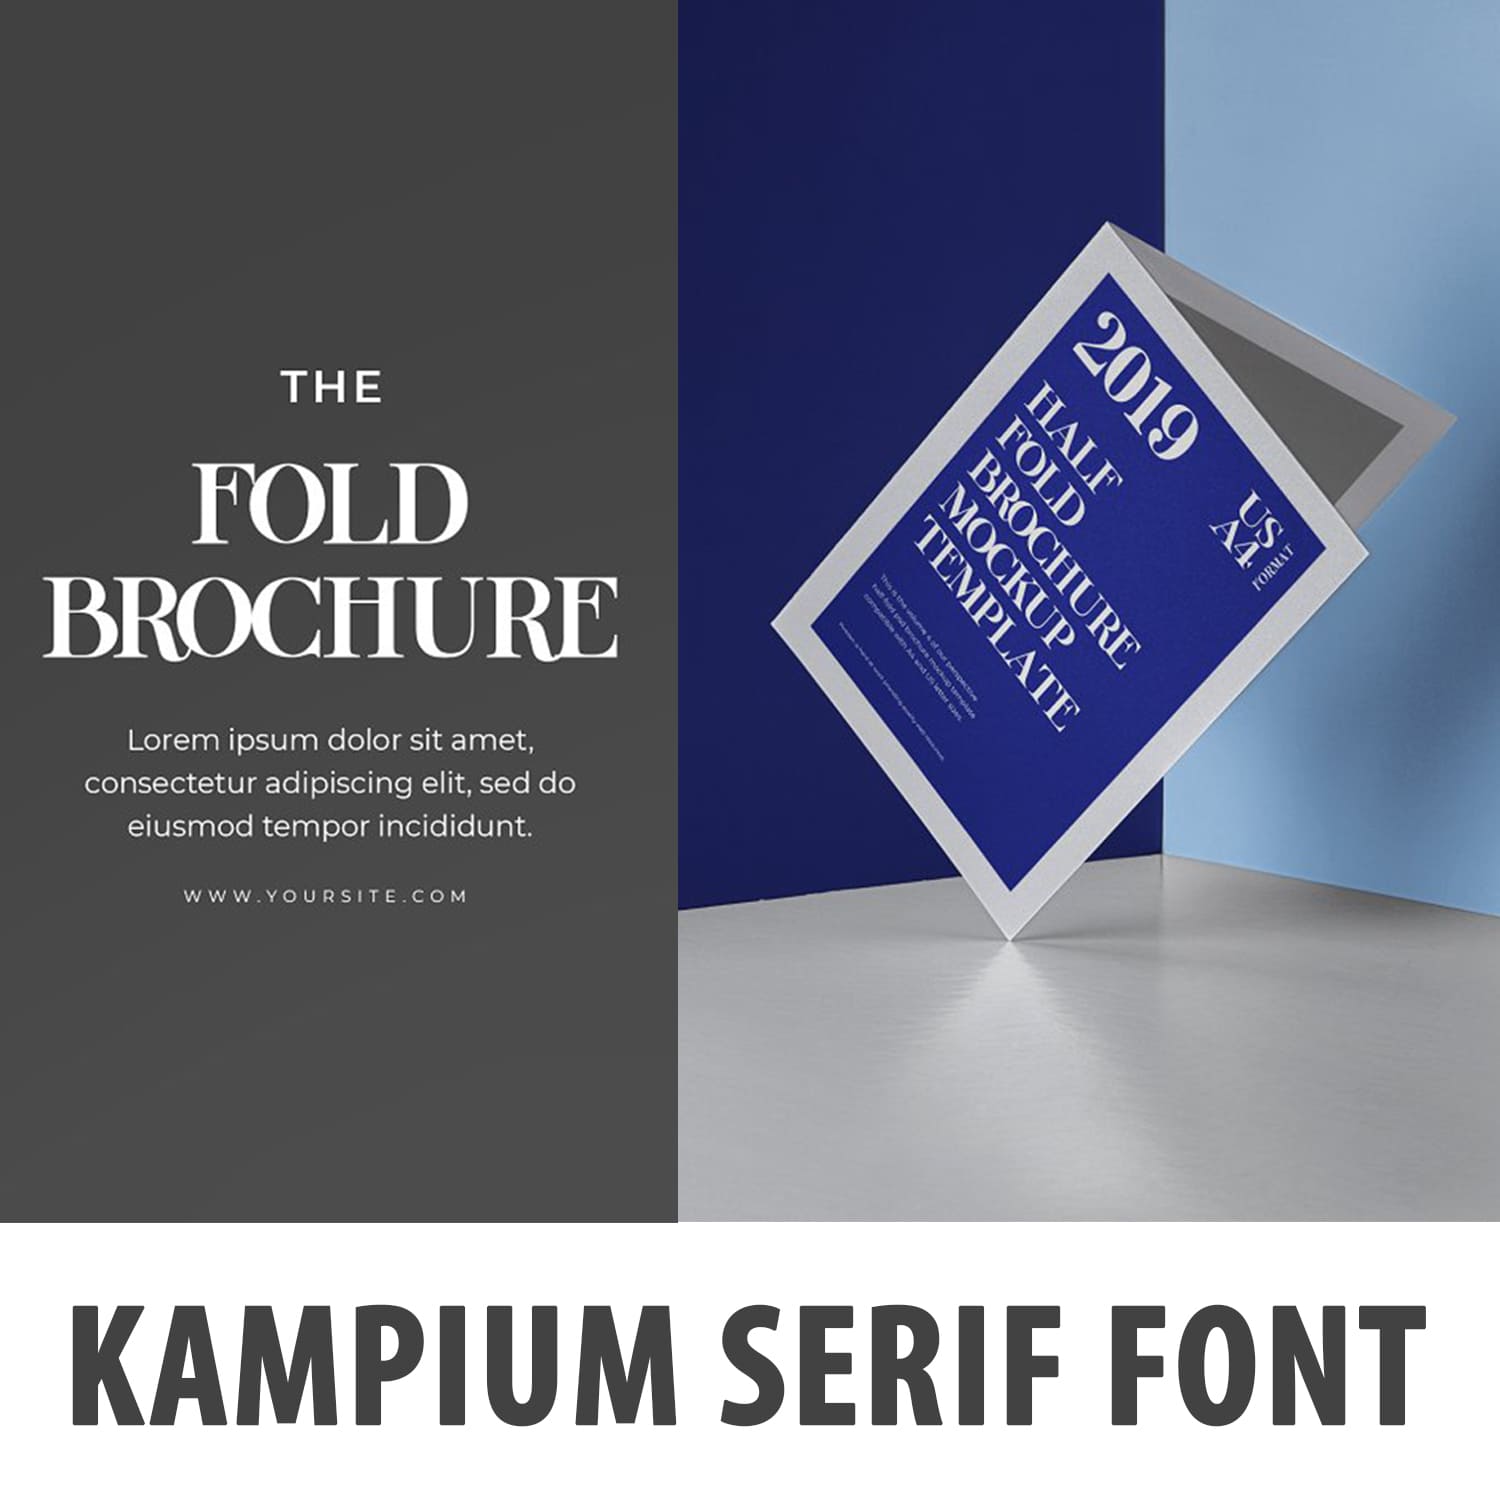 Kampium Serif Font cover image.